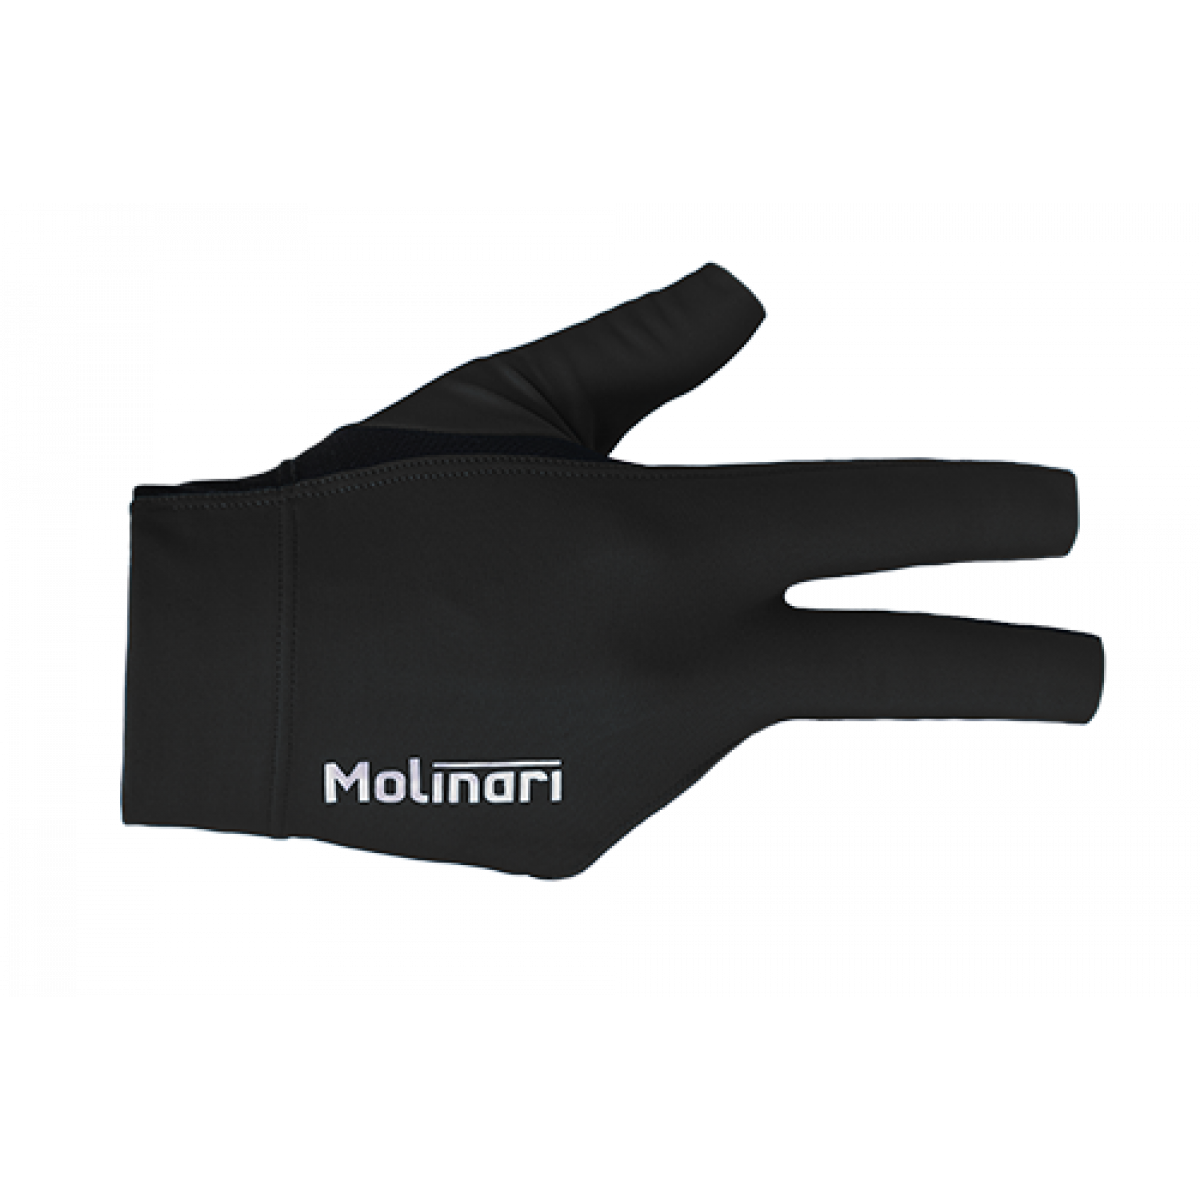 Rukavička Molinari Black - pravá univerzální- kulečníková rukavice